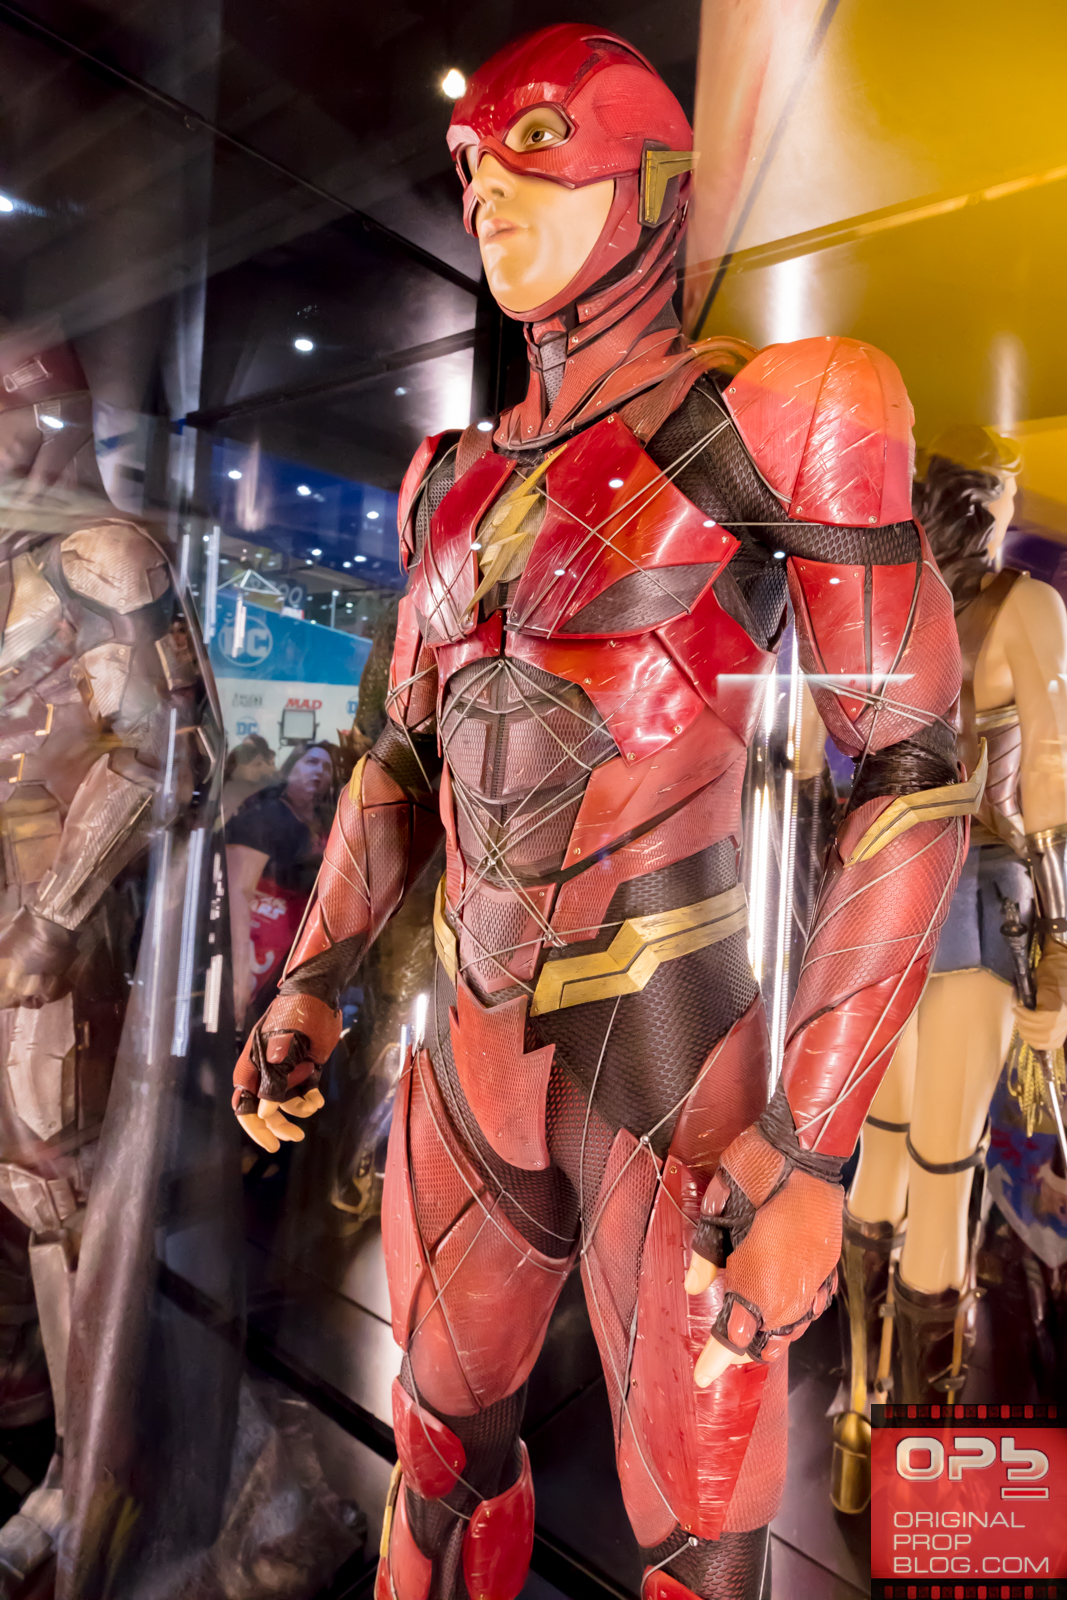 San Diego Comic-Con 2017: DC Comics “Justice League” Costume Exhibit (#SDCC # ...1067 x 1600